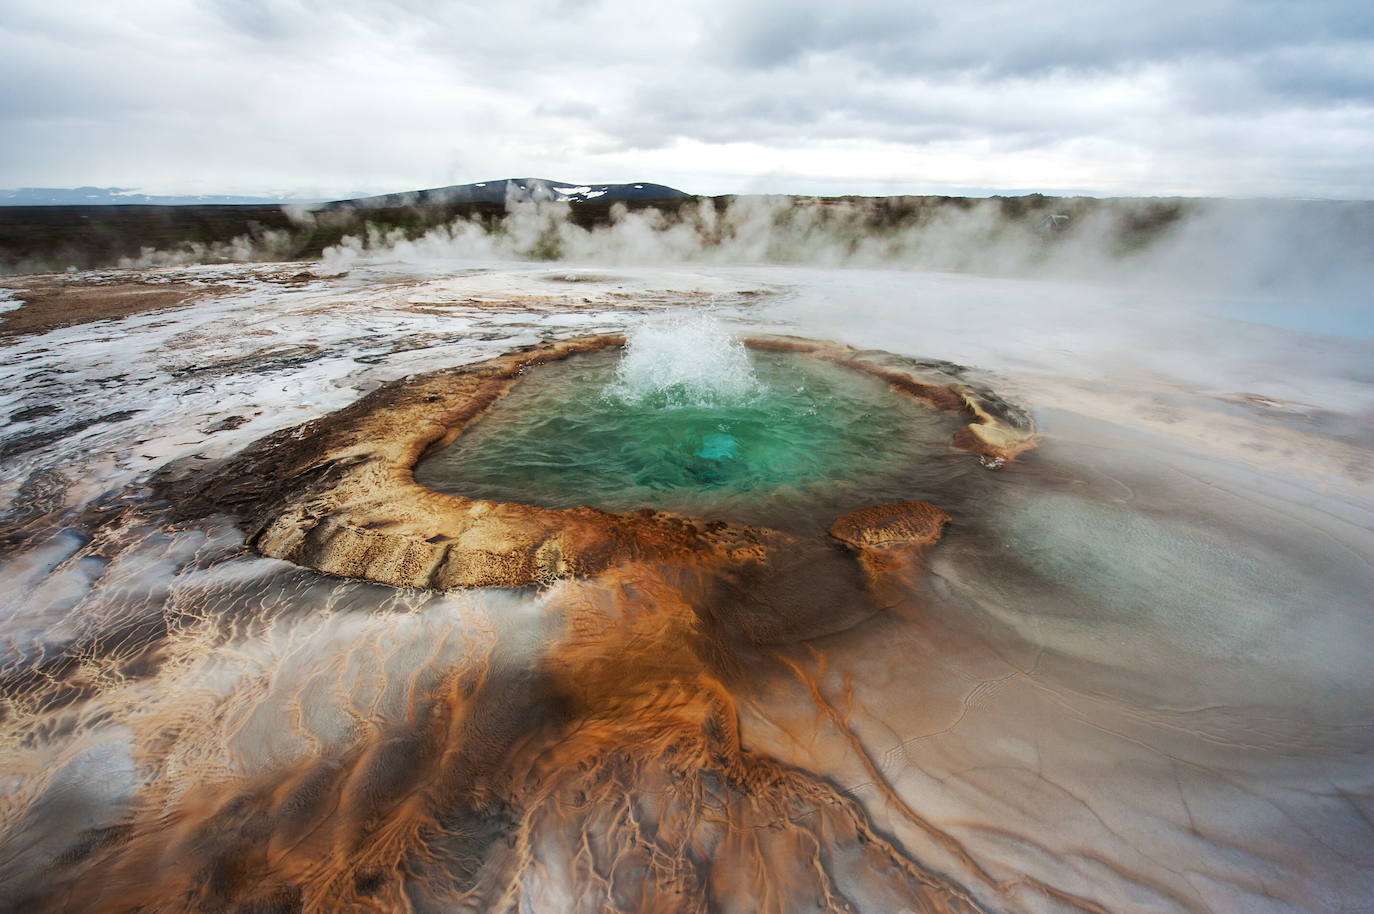 Hveravellir (Islandia) | Esta piscina de agua caliente es uno de los lugares más bellos del mundo. Una reserva natural a unos 650 metros sobre el nivel del mar está que considerara una de las zonas geotérmicas más bonitas de Islandia. Los visitantes que lo deseen pueden bañarse en ella.